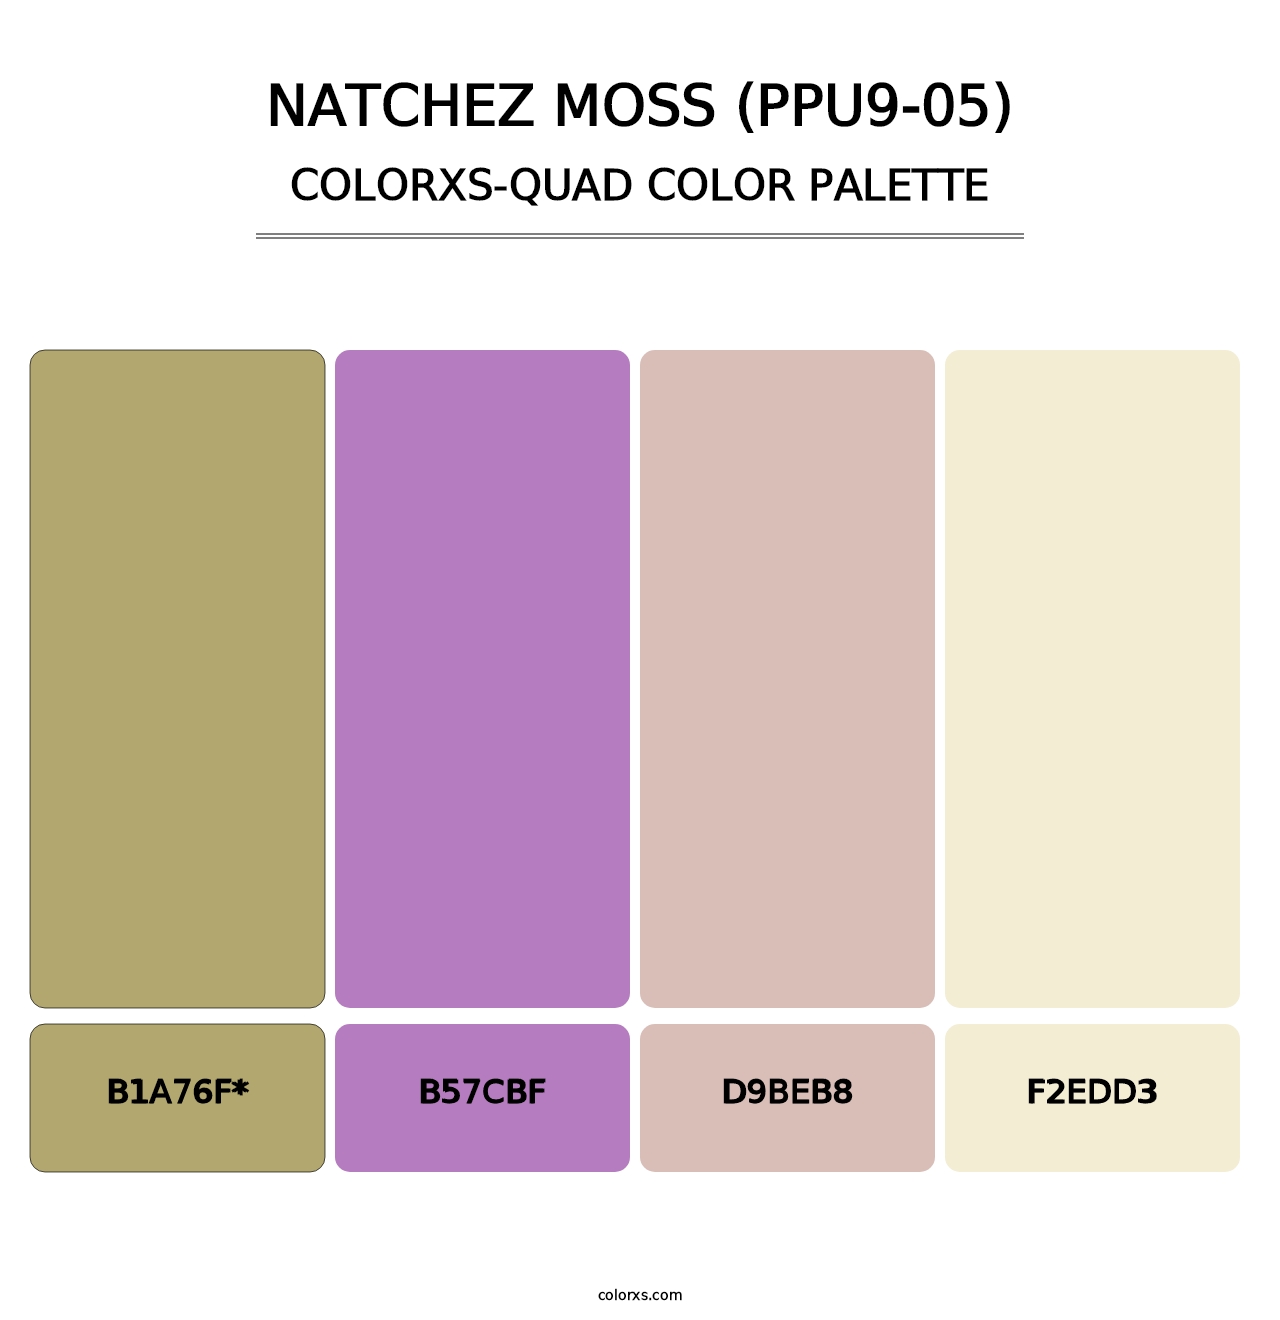 Natchez Moss (PPU9-05) - Colorxs Quad Palette